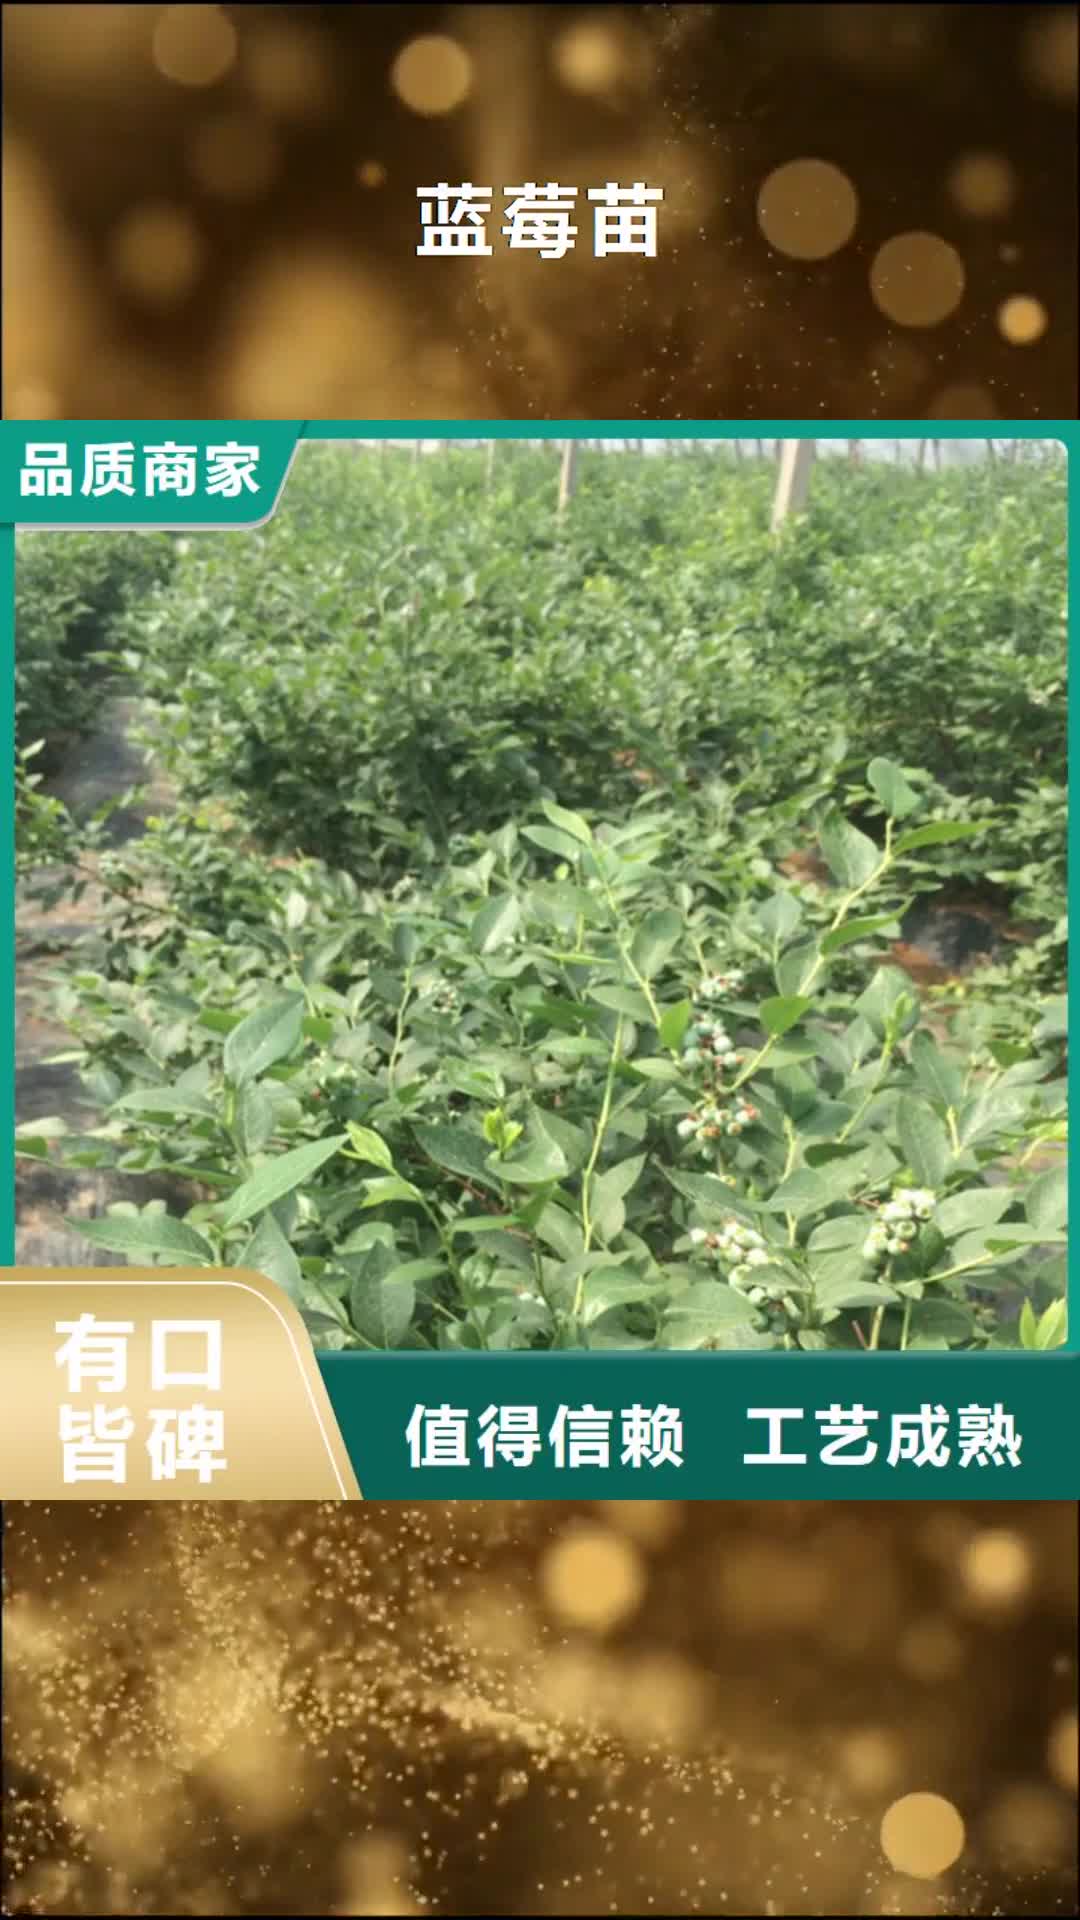 【广州 蓝莓苗,苹果苗符合行业标准】